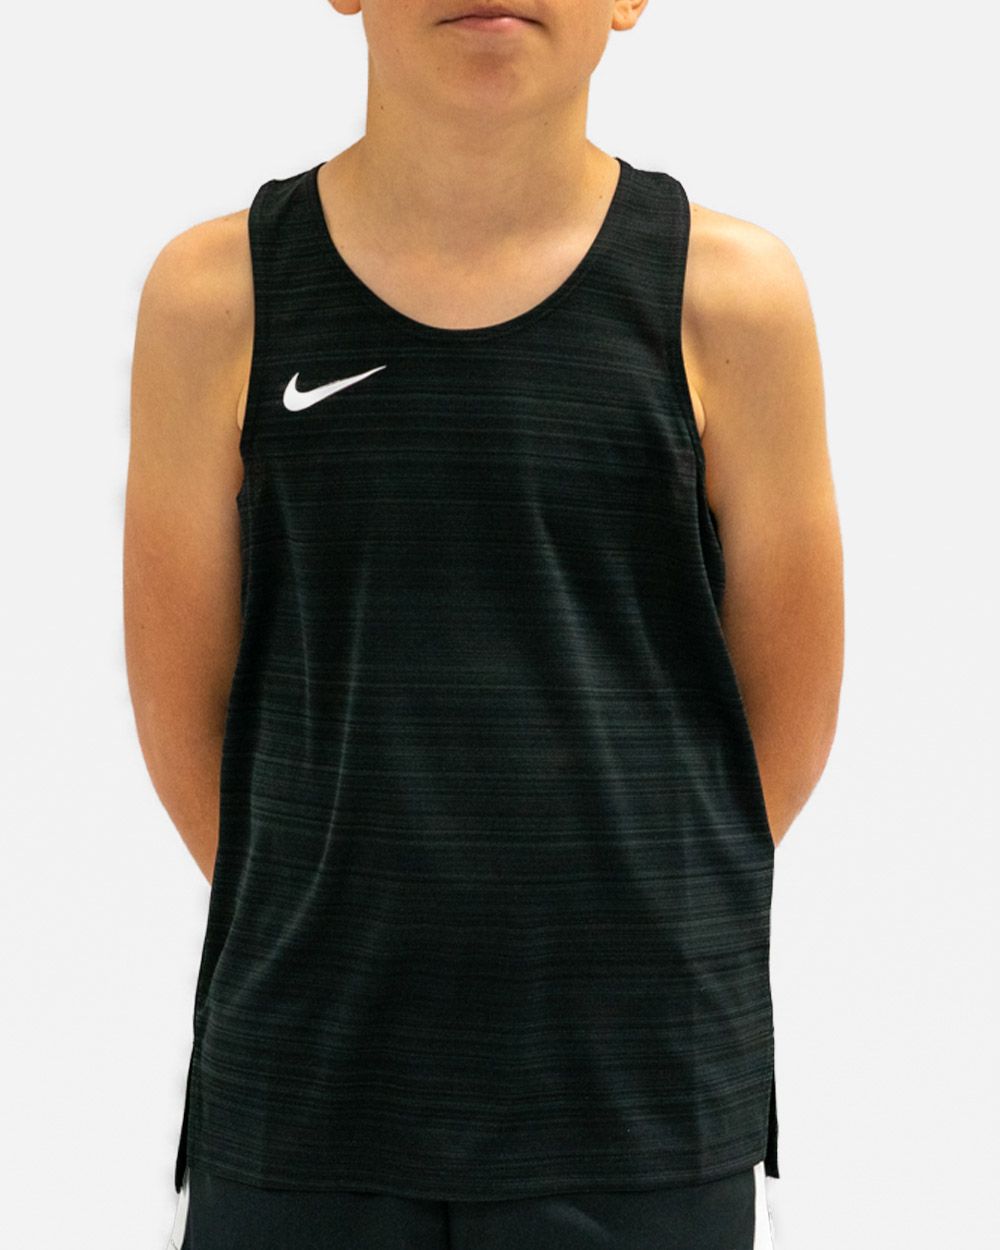 Nike Running - Miler - Débardeur en tissu Dri-FIT - Noir